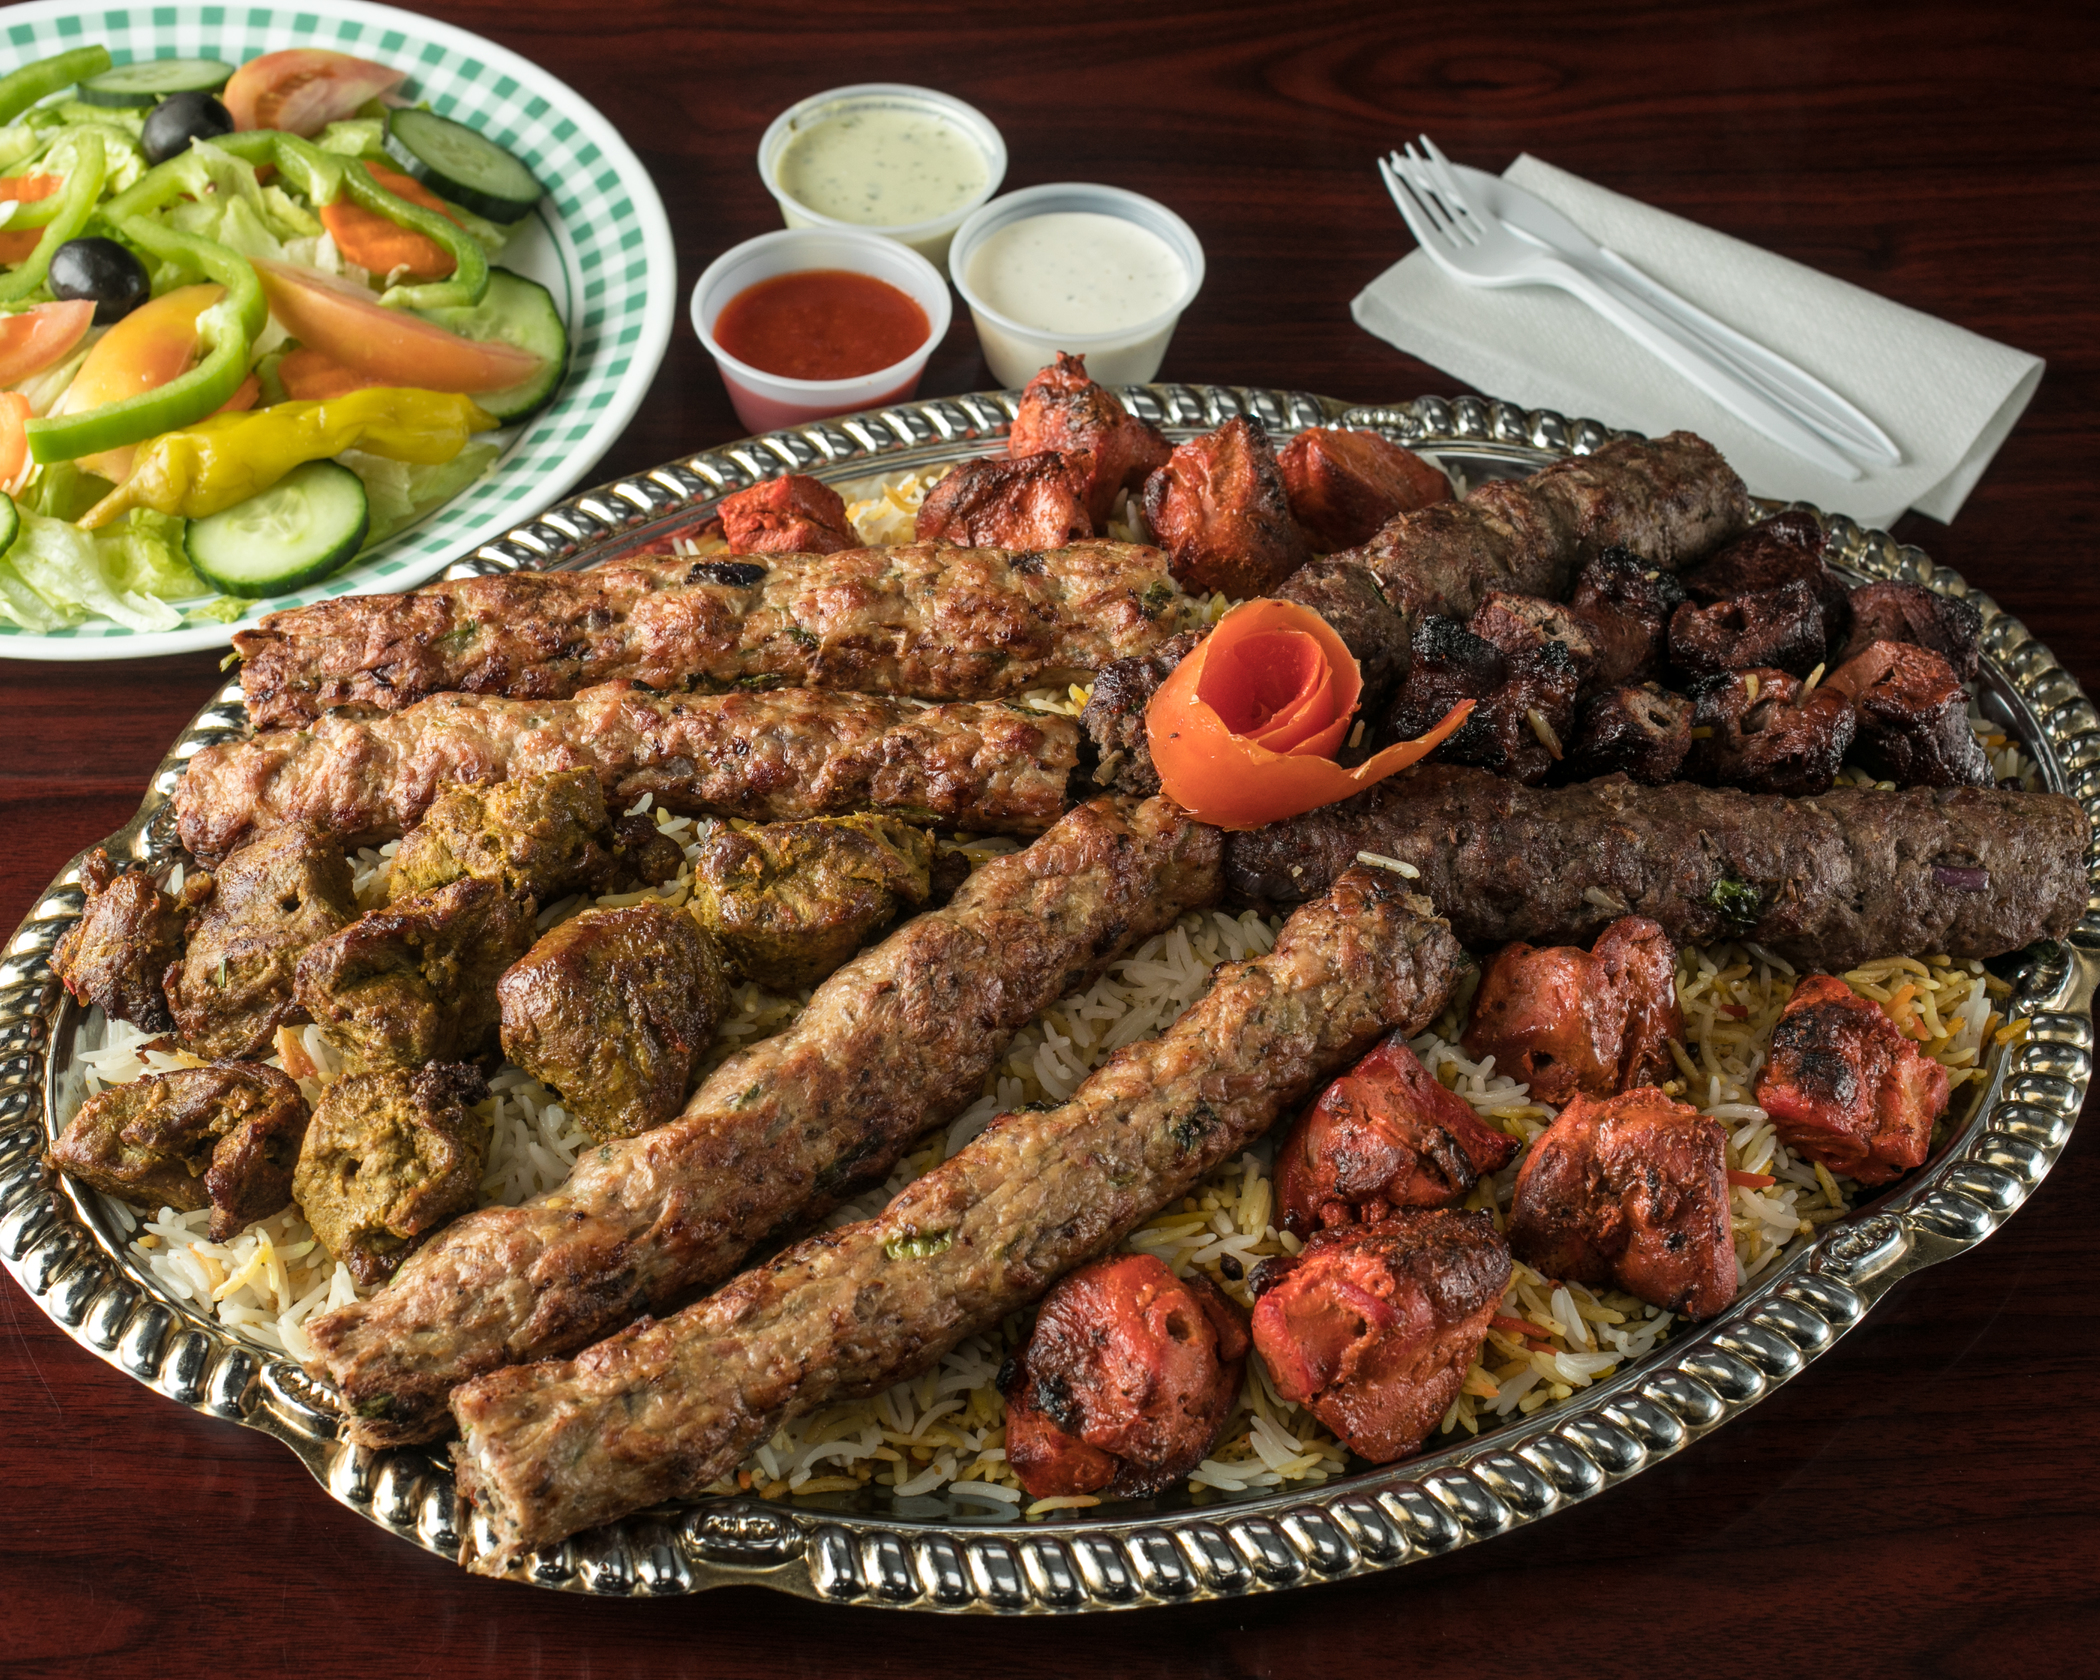 Order 49. Special 12 Skewers Platter food online from Peshawri Kebab store, Waltham on bringmethat.com